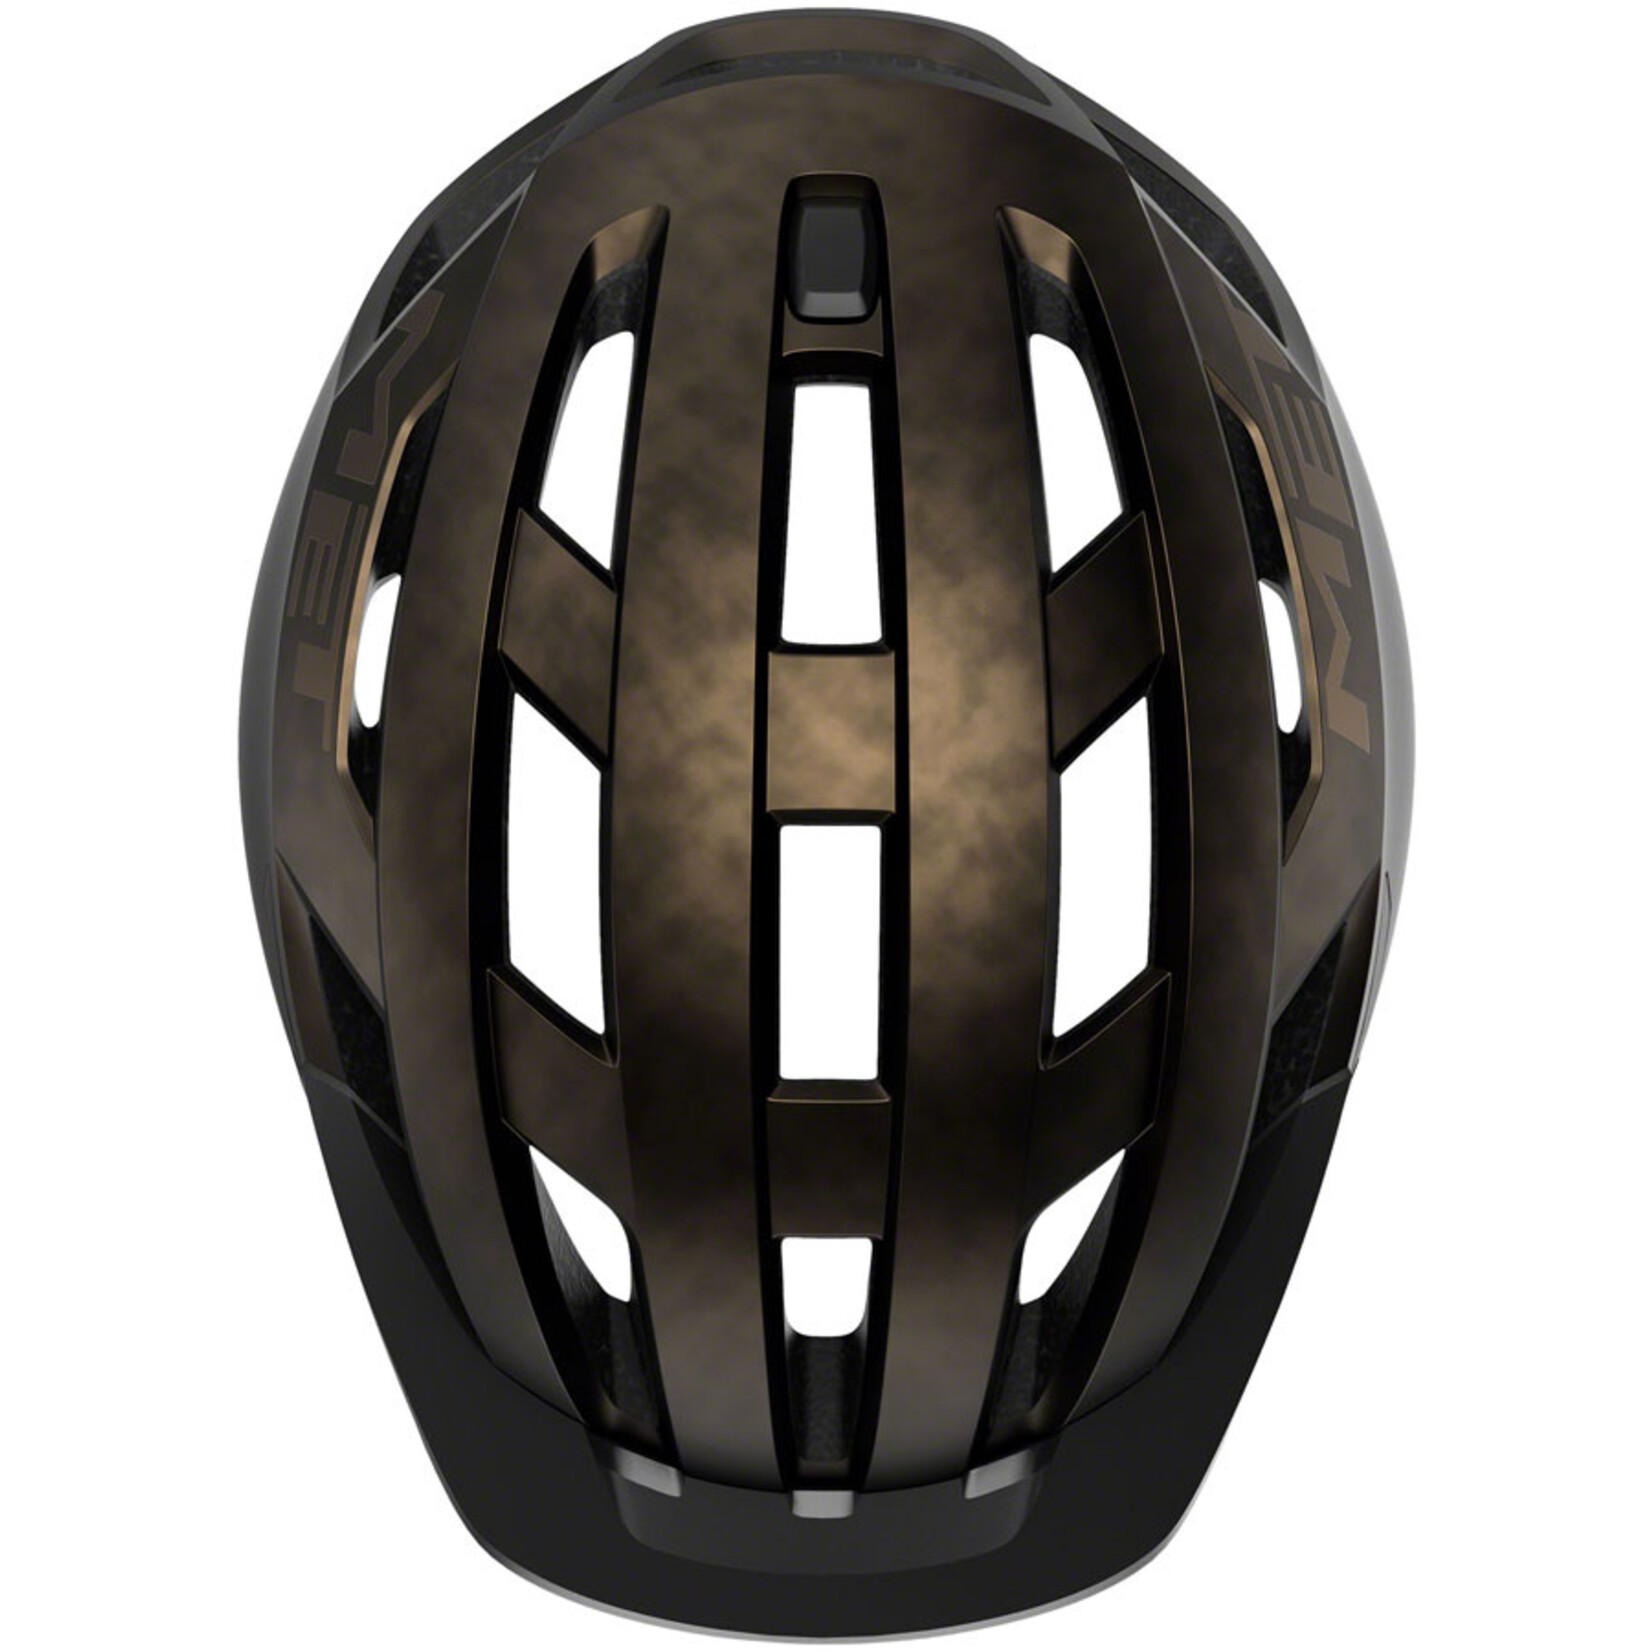 MET Helmets MET Allroad MIPS Helmet - Bronze, Medium